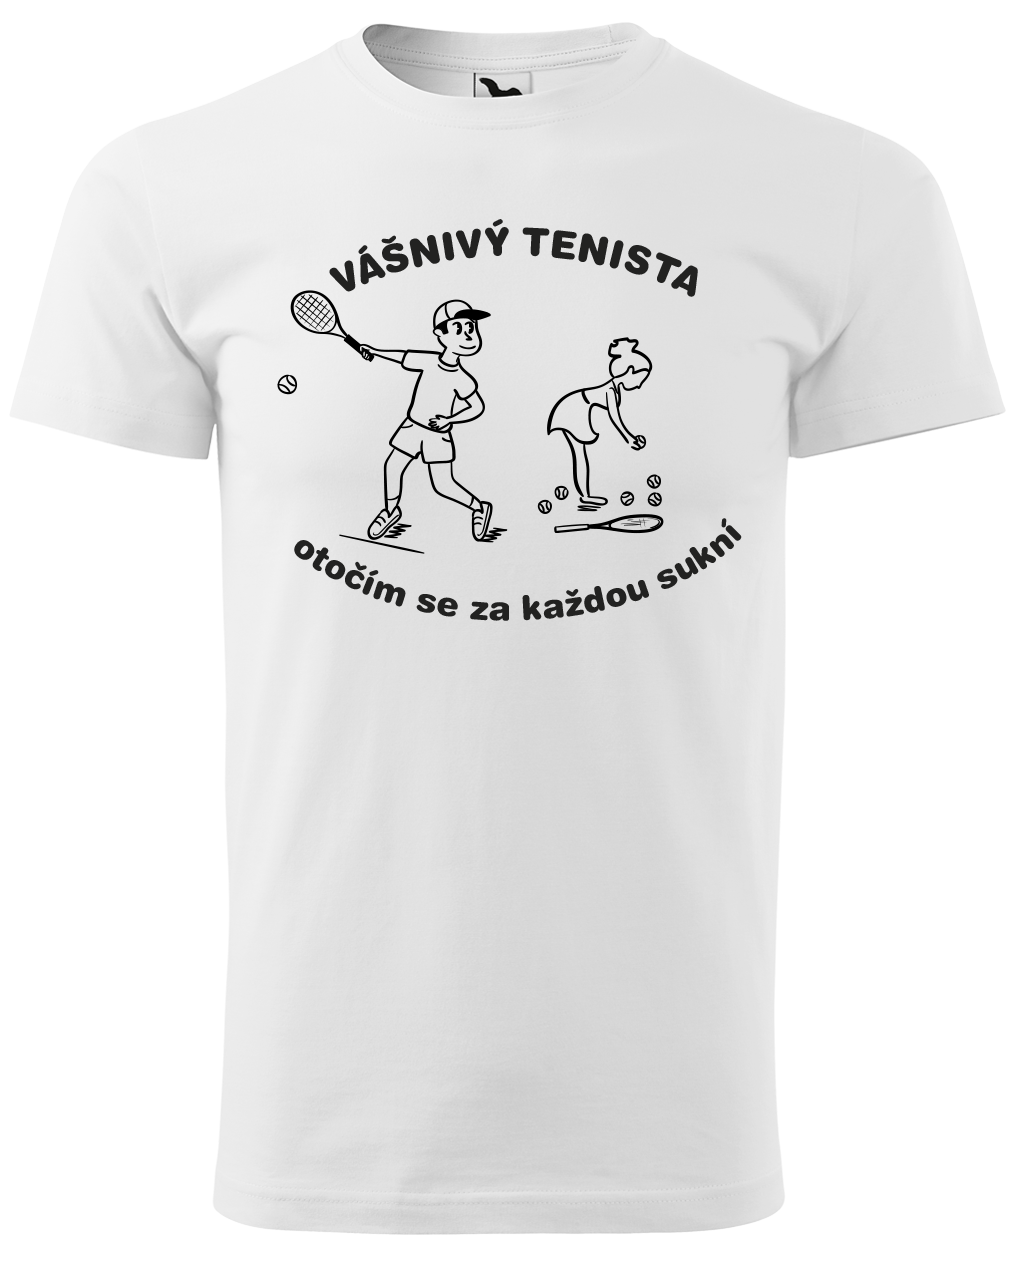 Vtipné tenisové tričko - Vášnivý tenista Velikost: M, Barva: Bílá (00)